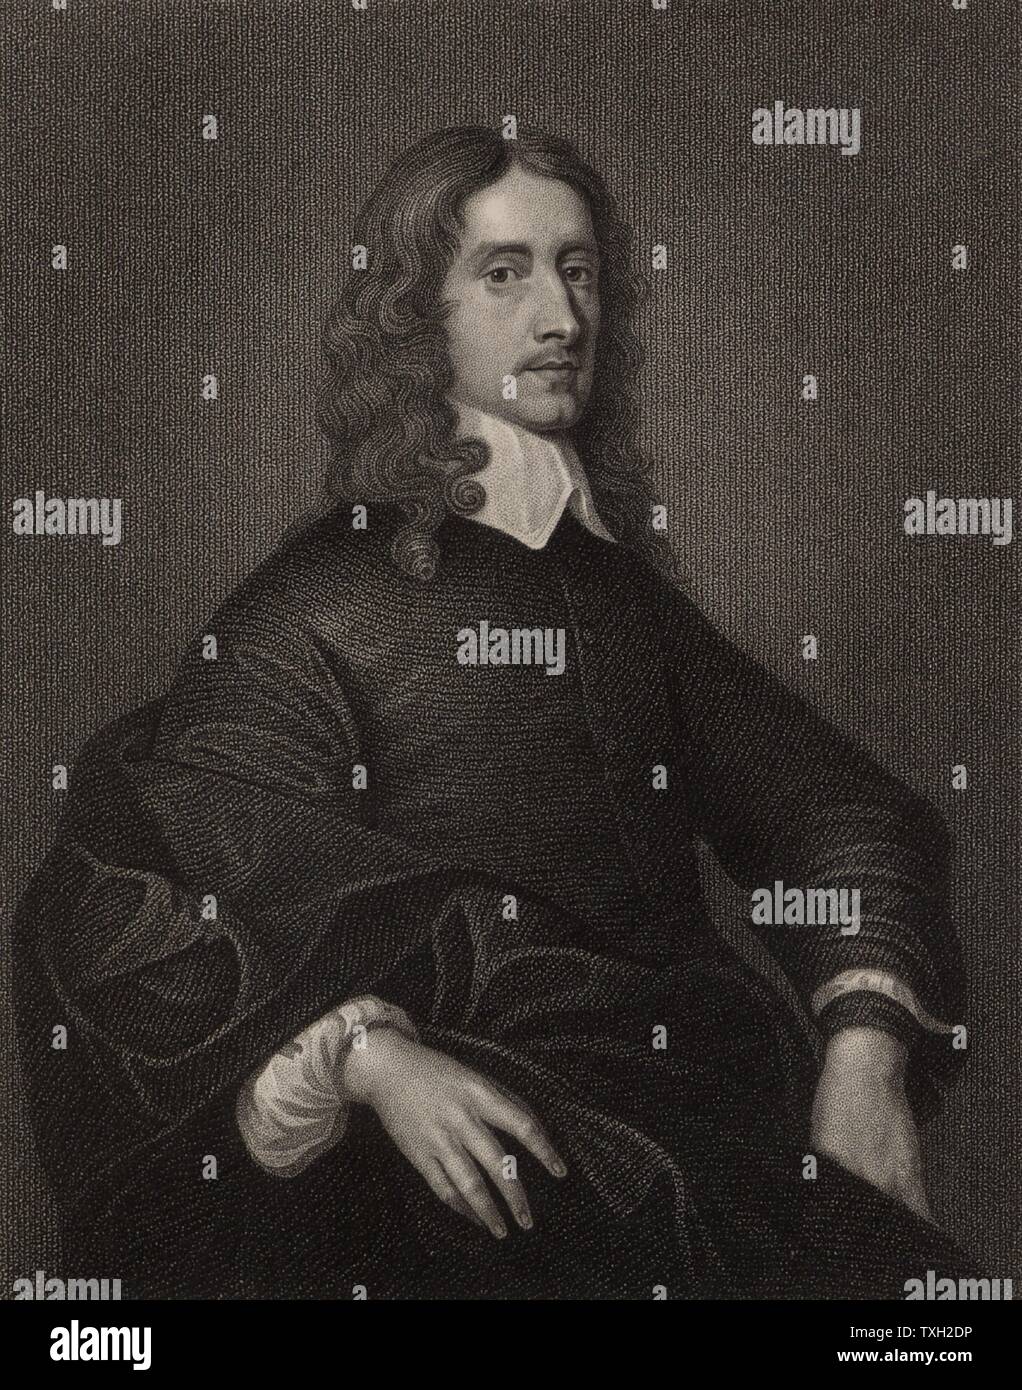 John Selden (1584-1654) englischer Jurist, Historiker und Antiquar, auf Salvington in der Nähe von Worthing in Sussex geboren. Gravur nach dem Porträt von mytens. Stockfoto